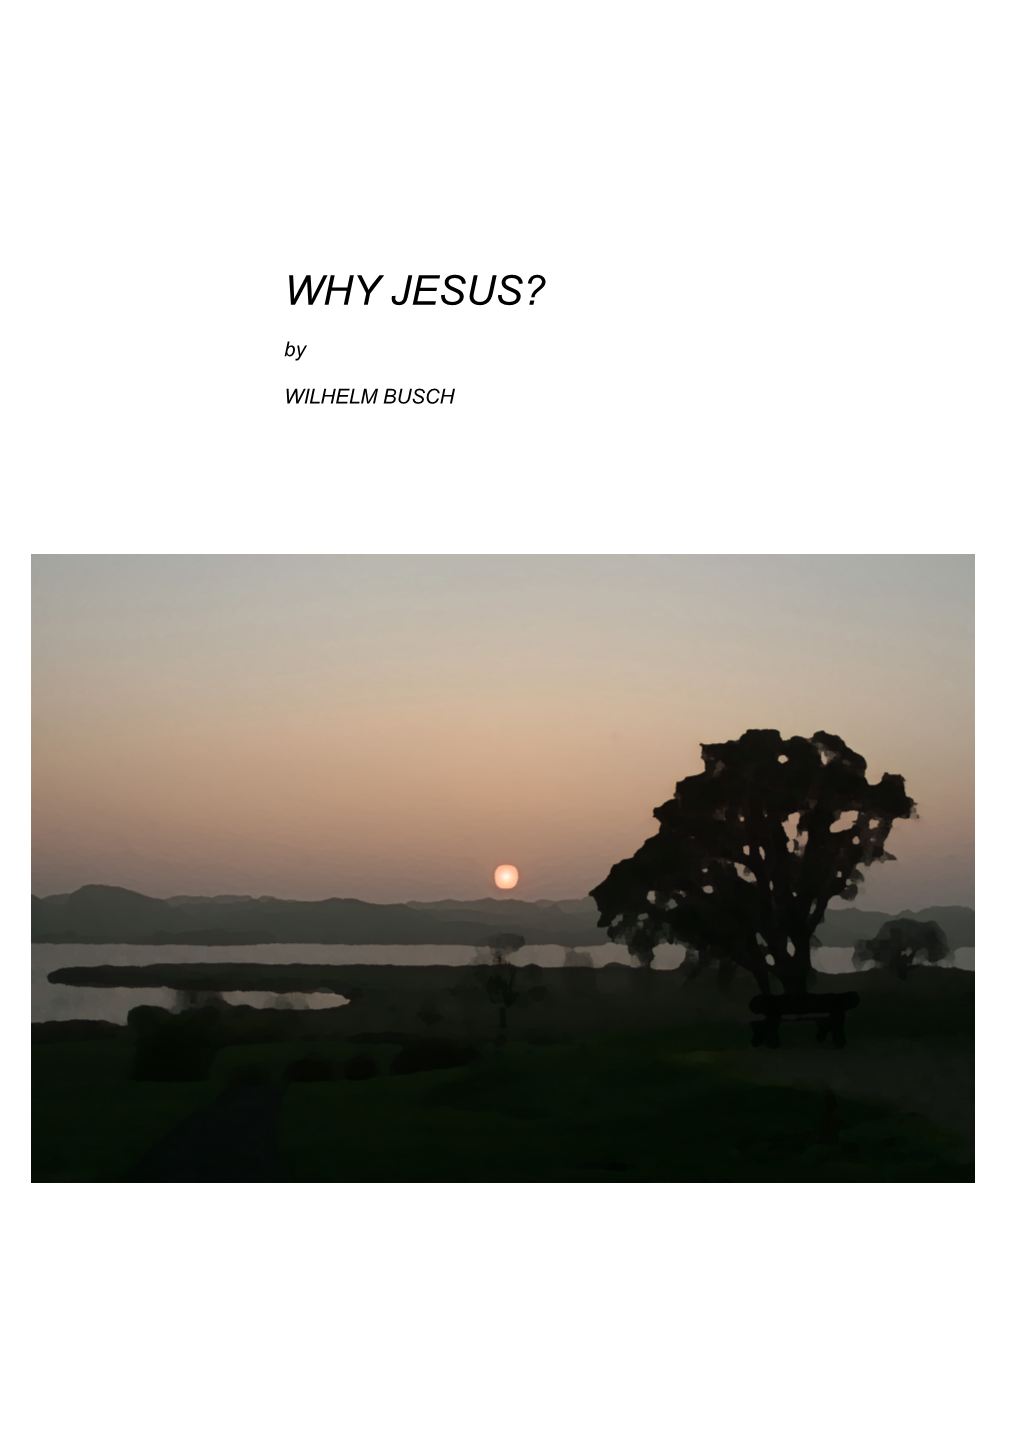 Why Jesus? by Wilhelm Busch